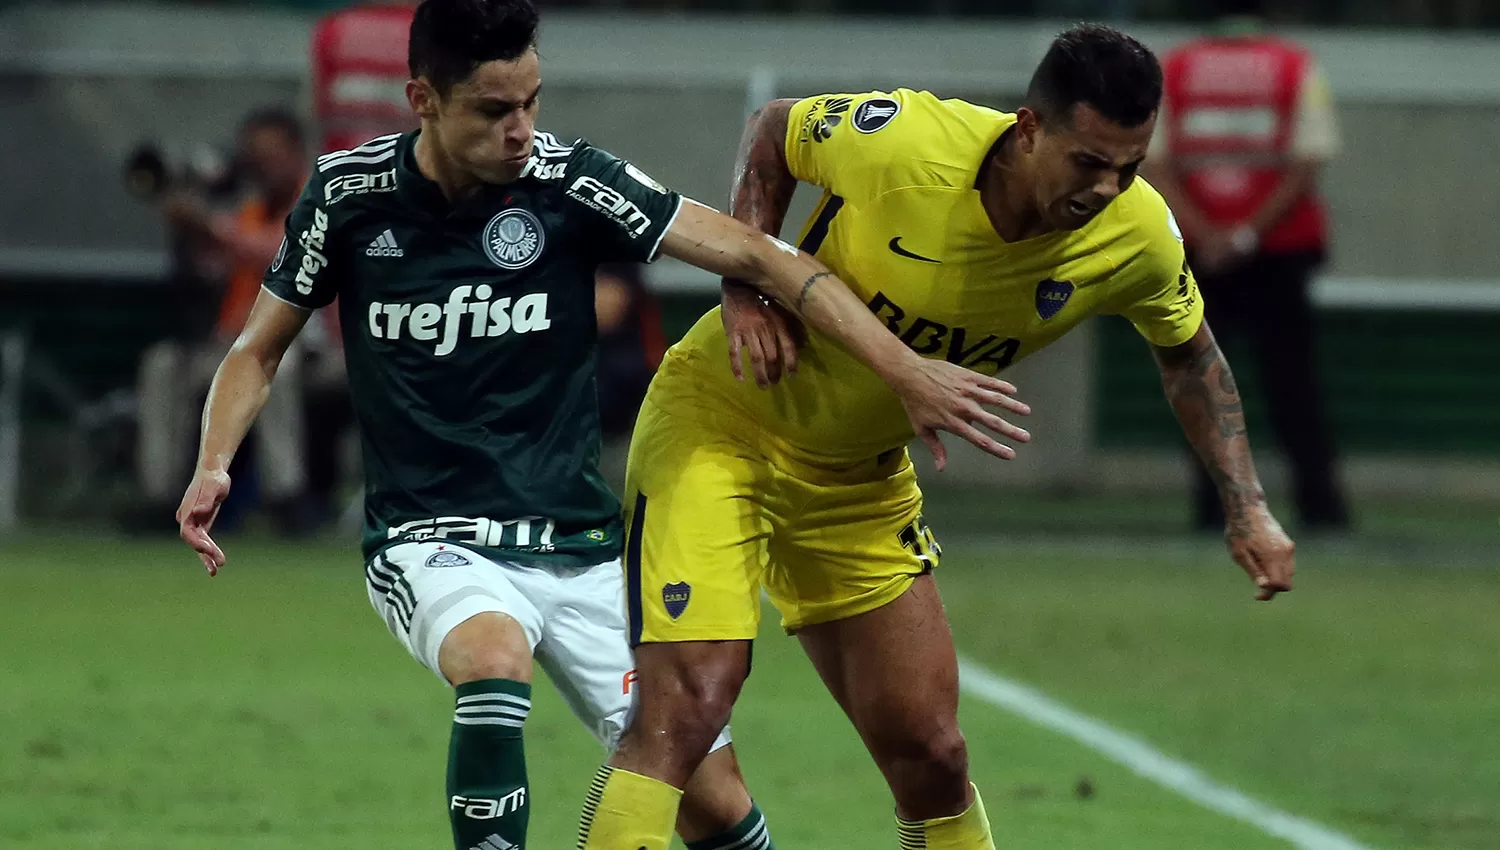 Edwin Cardona, en acción ante Diego Barbosa, de Palmeiras.
REUTERS